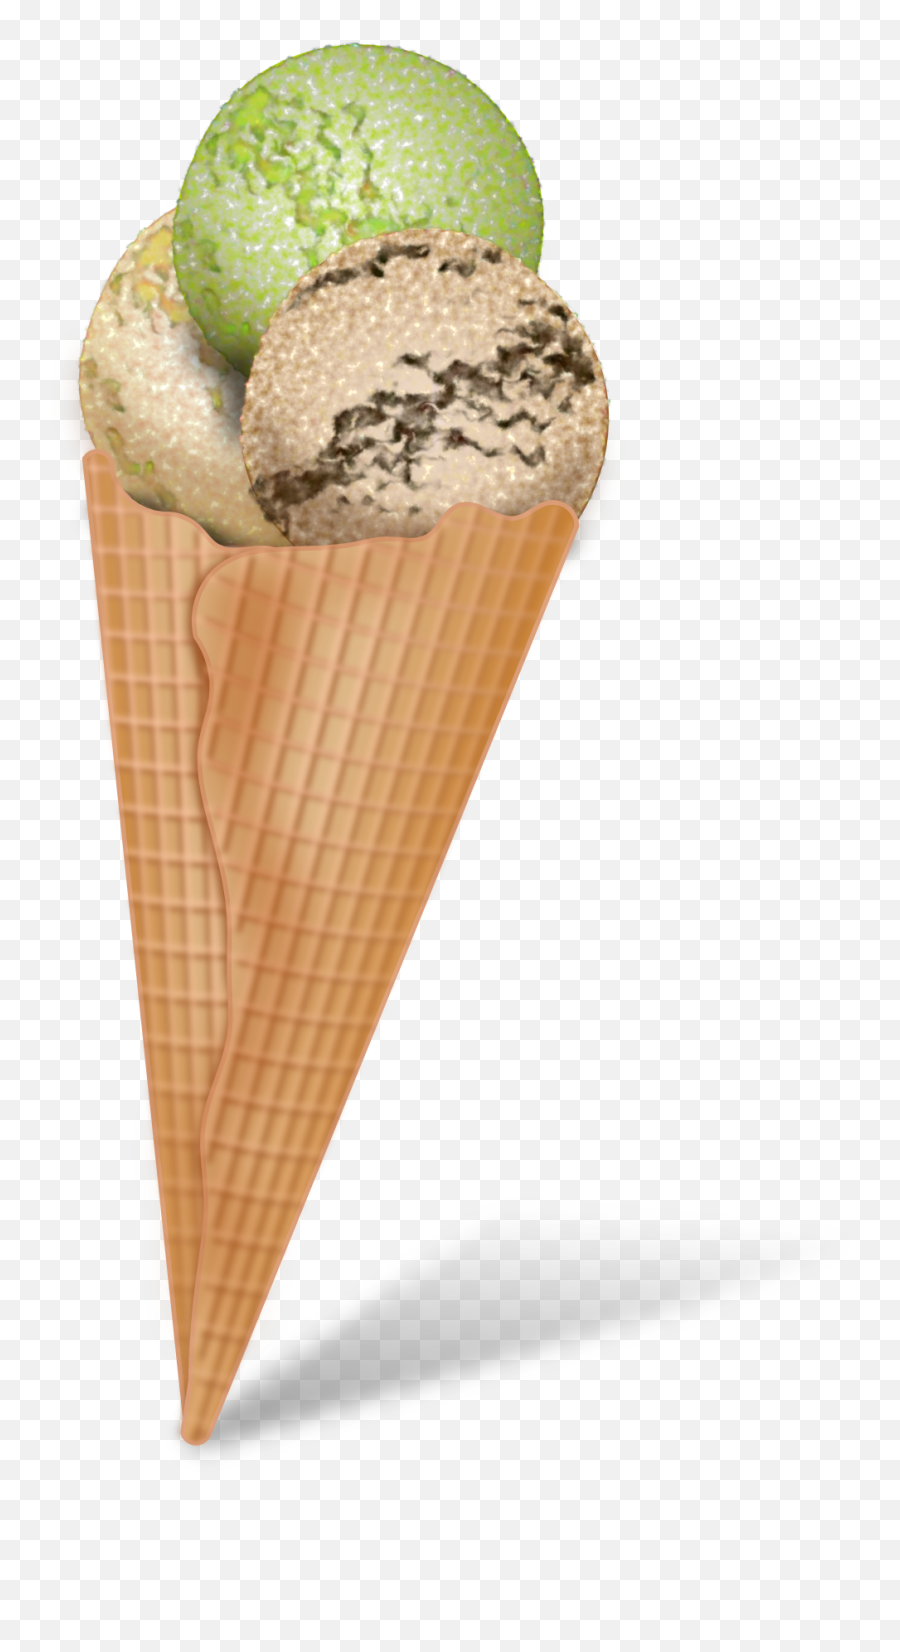 Free Ice Cream Cone Clip Art 2 - Wikiclipart Solid Figure Of Ice Cream Cone Emoji,Cone Clipart